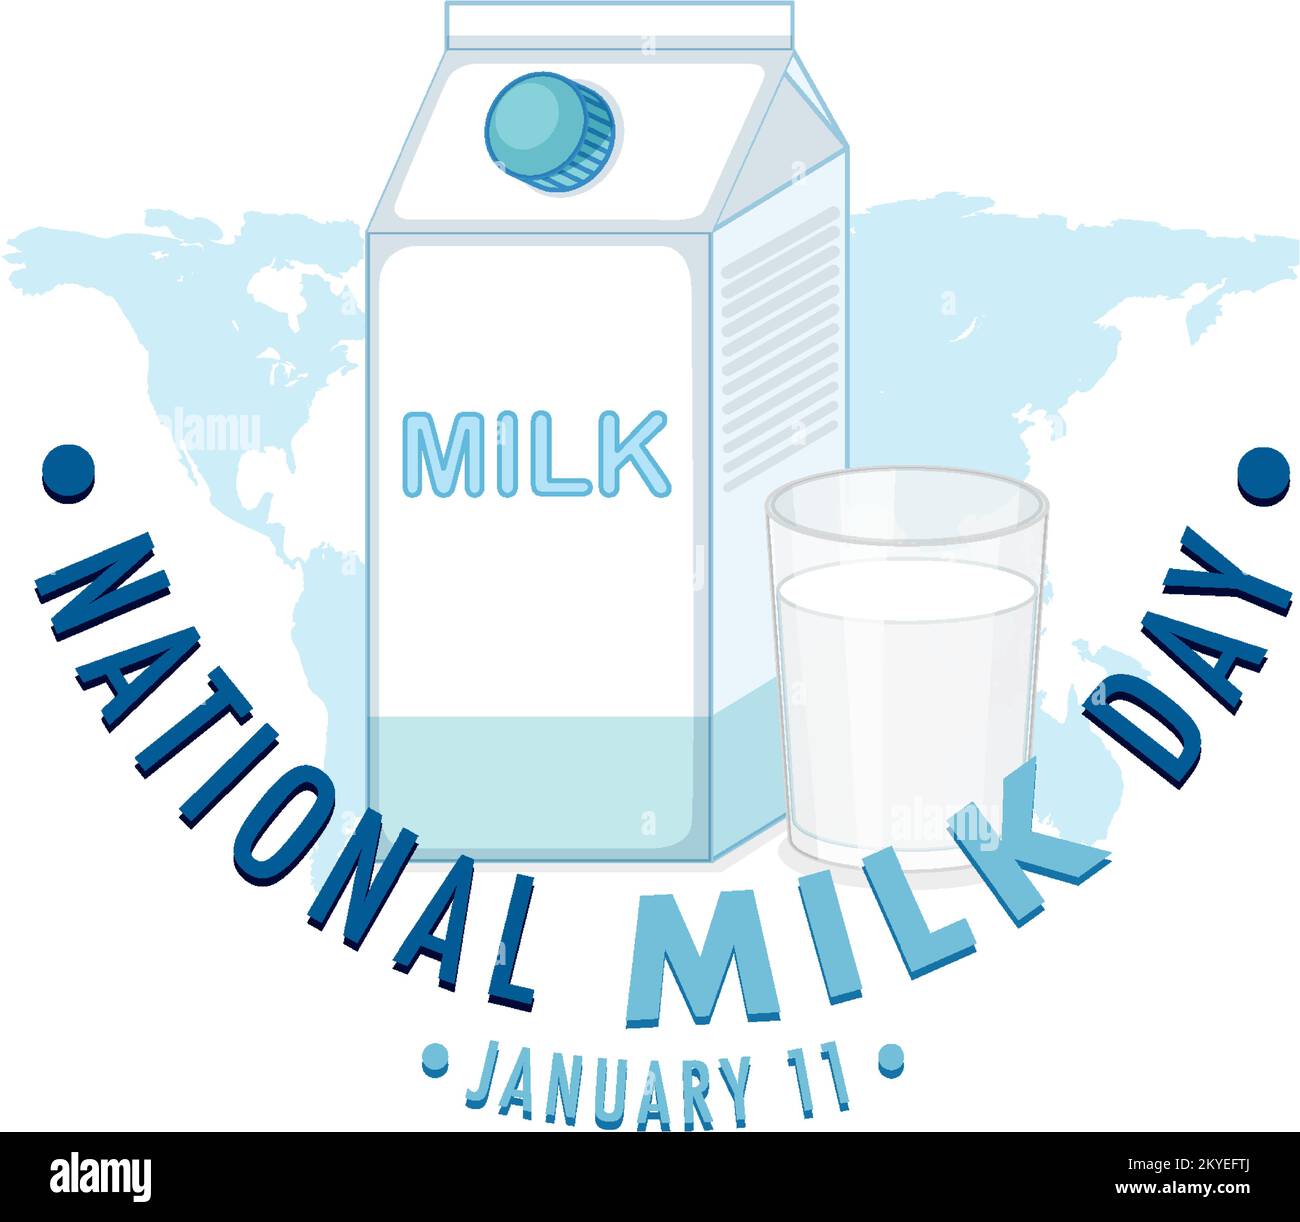 National Milk Day Banner Design illustration Stock Vector